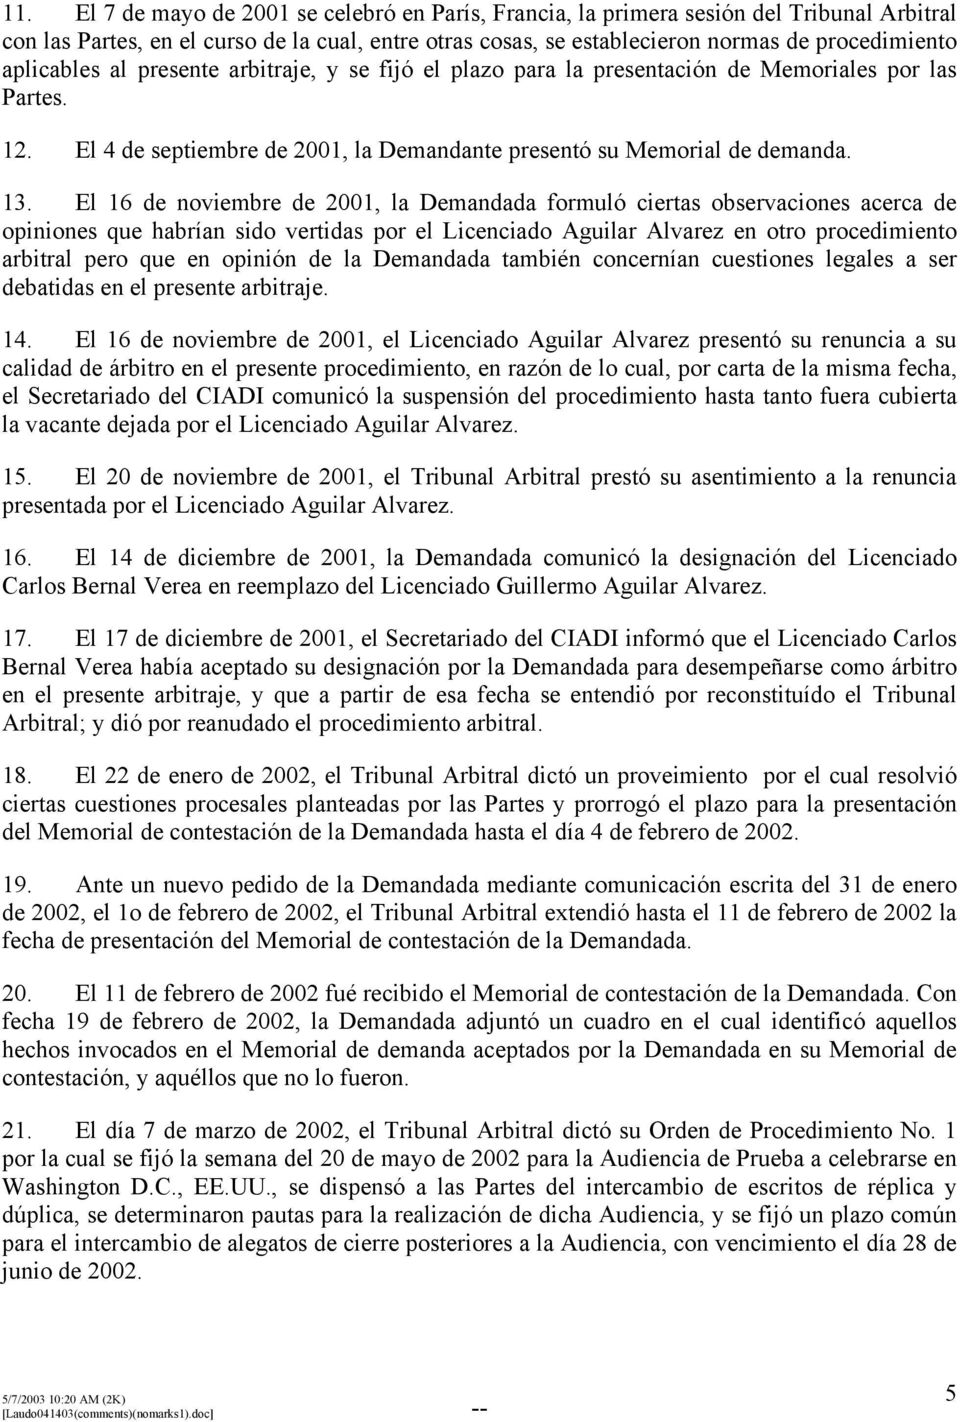 El 16 de noviembre de 2001, la Demandada formuló ciertas observaciones acerca de opiniones que habrían sido vertidas por el Licenciado Aguilar Alvarez en otro procedimiento arbitral pero que en